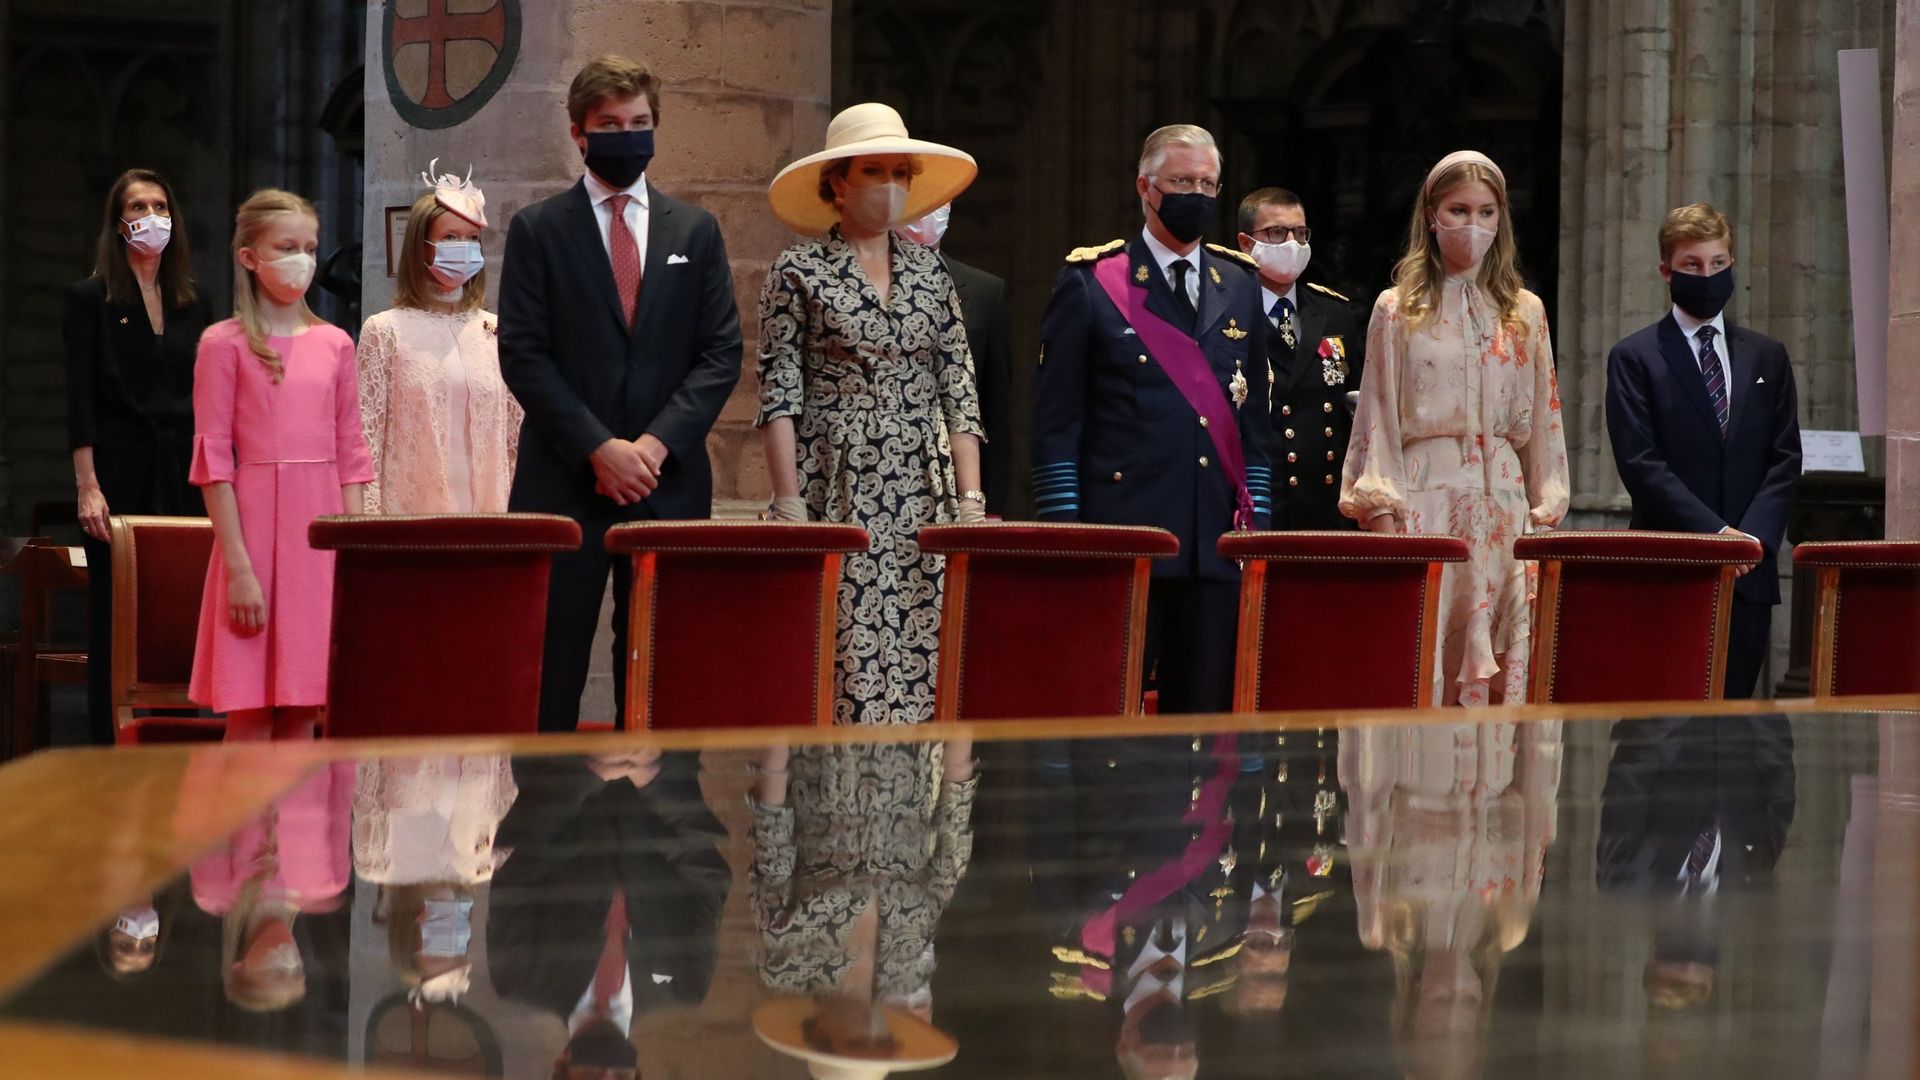 La famille royale belge durant le te Deum du 21 juillet 2020 dans l’église Saint-Michel et Gudule de Bruxelles.